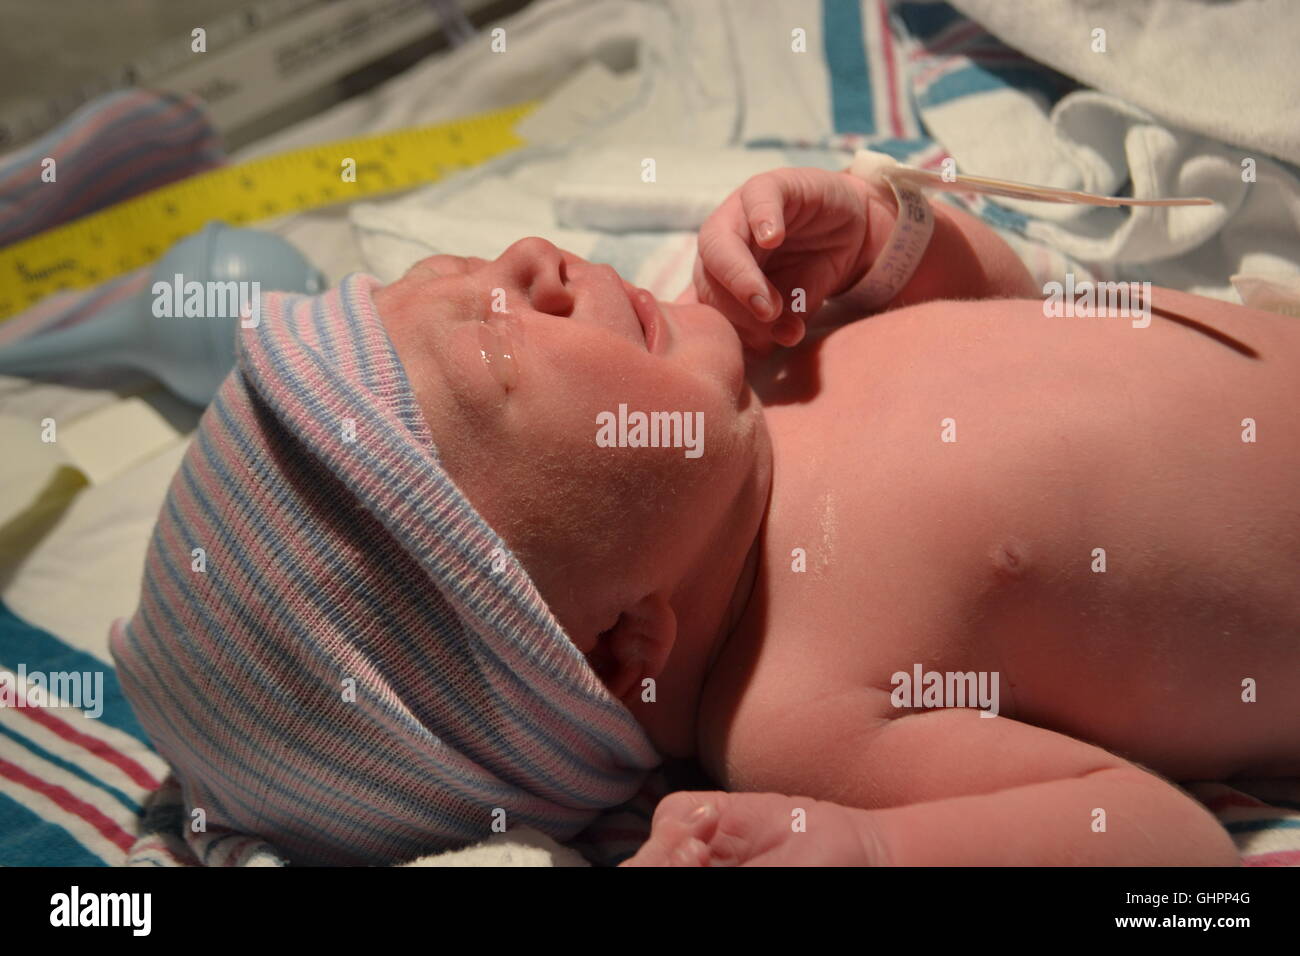 New born baby in hospital Stock Photo